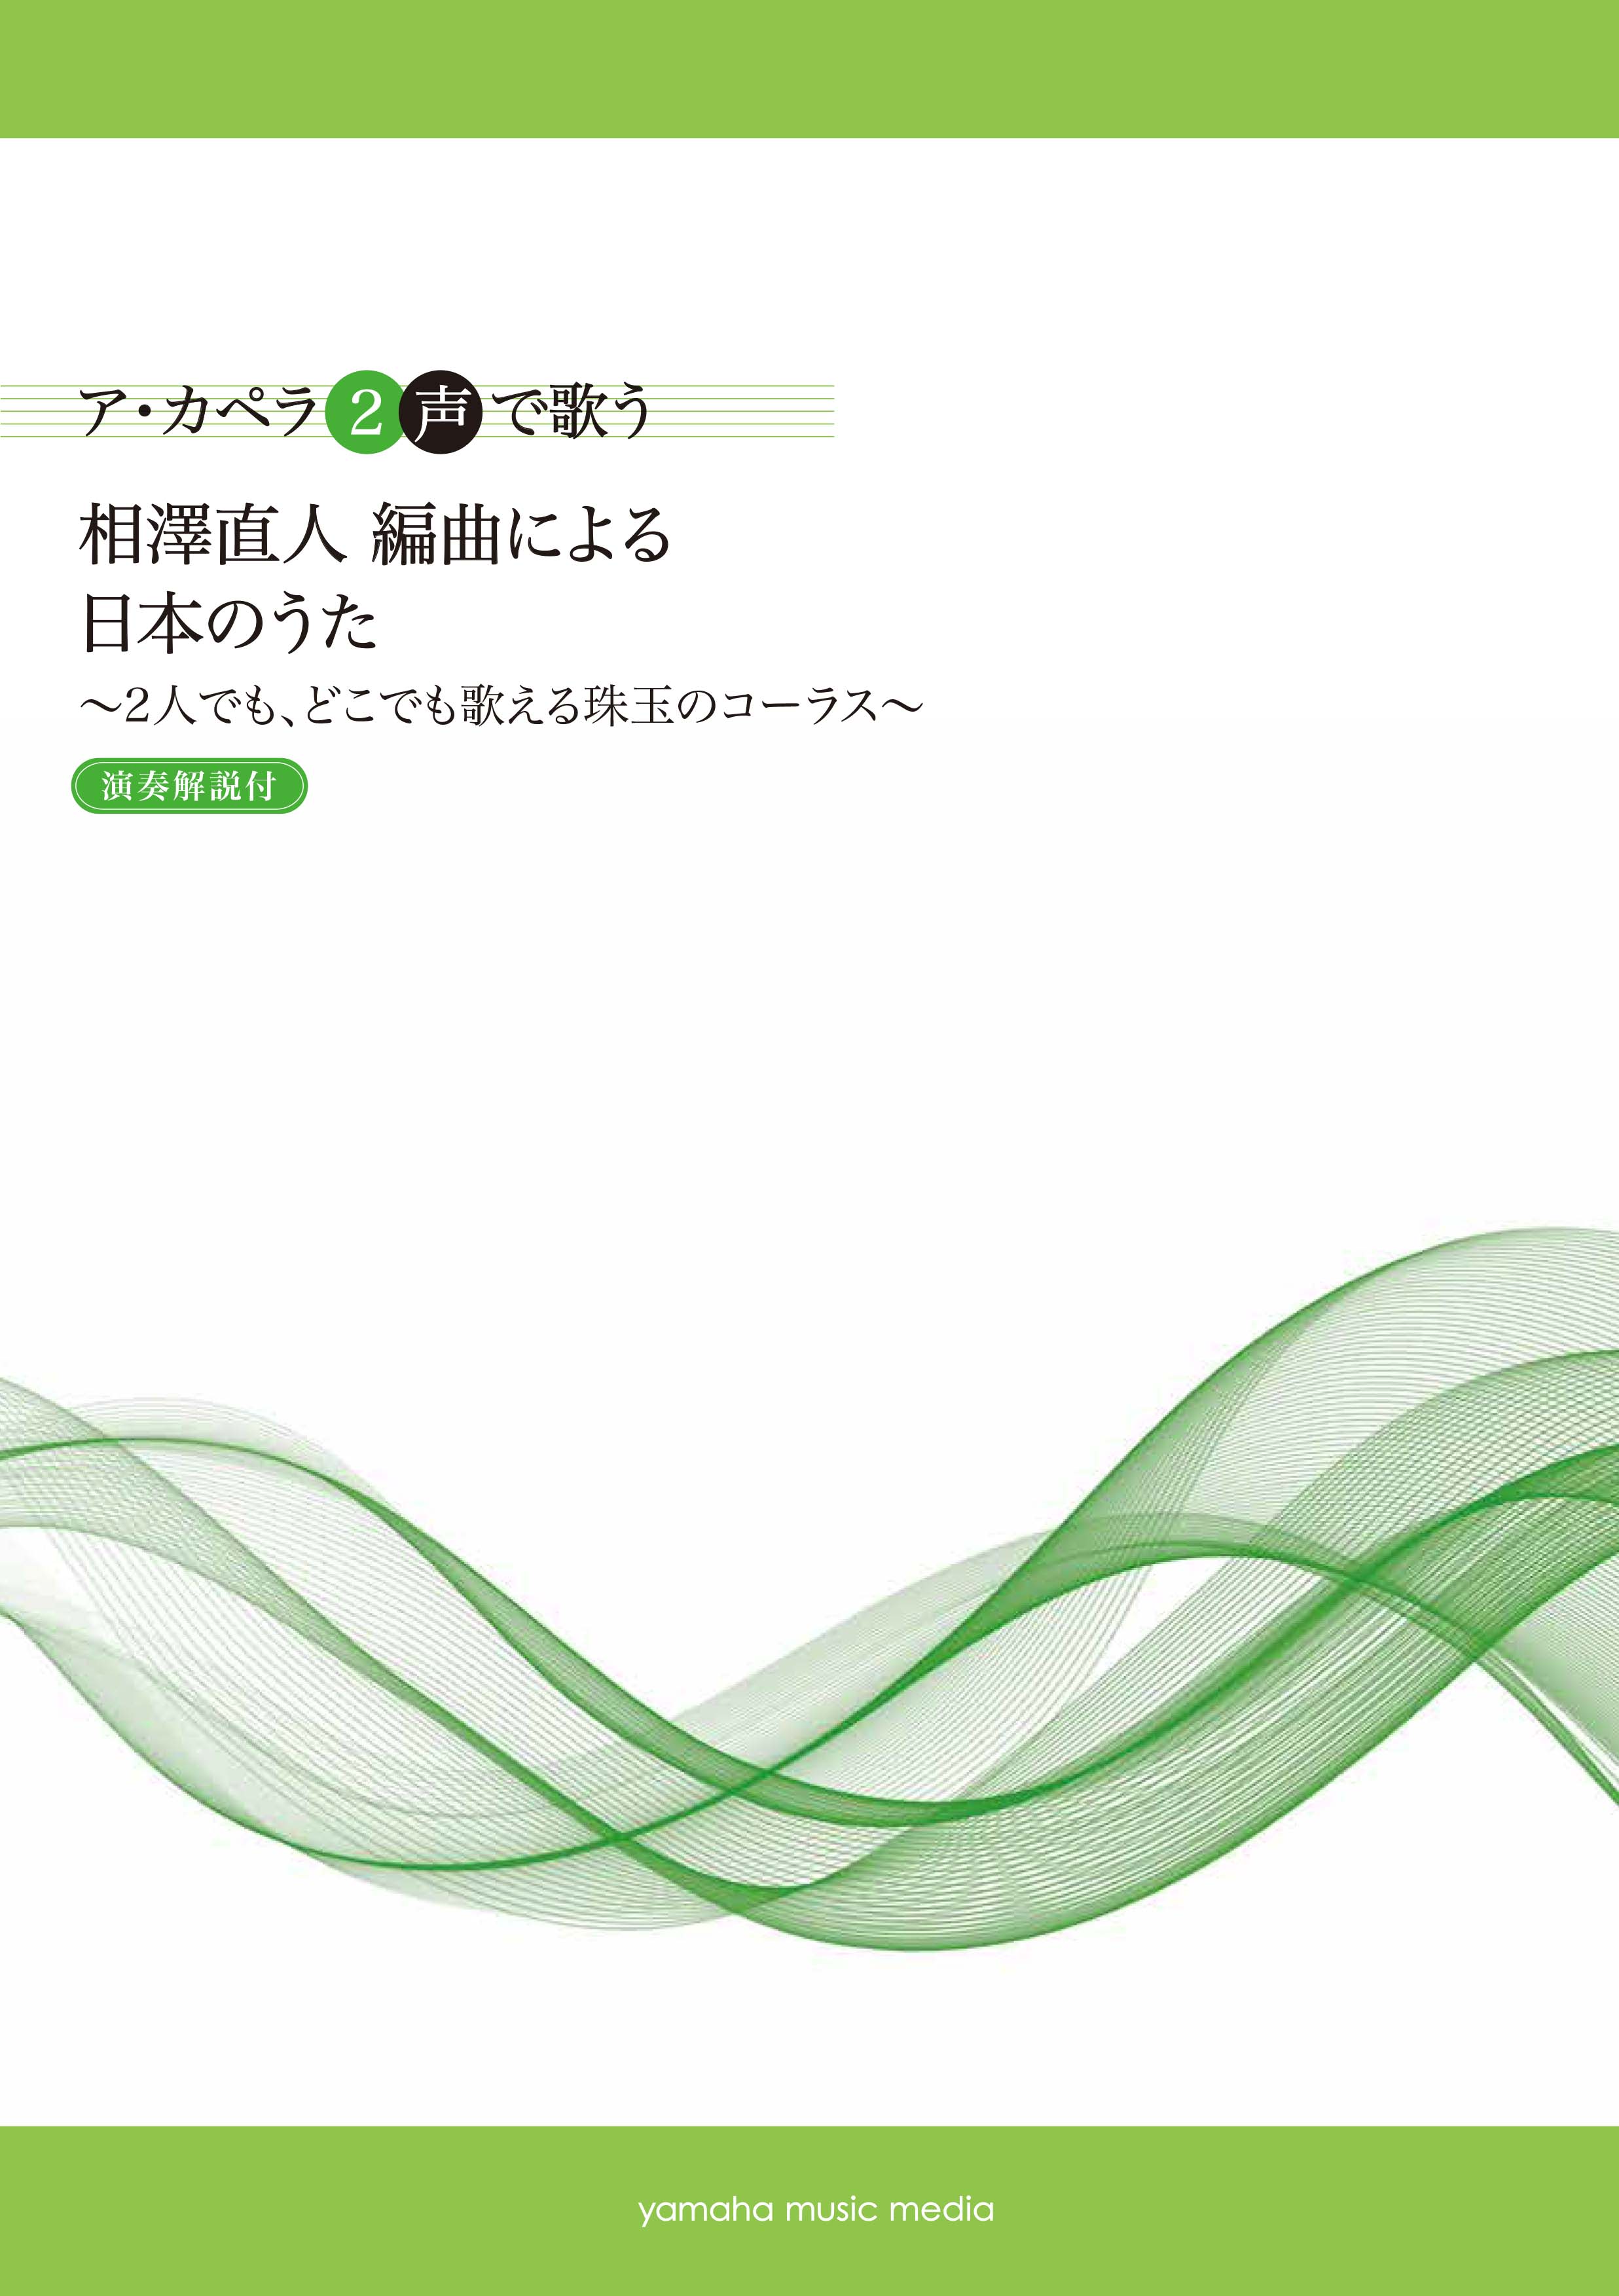 ア カペラ２声で歌う 相澤直人 編曲による 日本のうた 2人でも どこでも歌える珠玉のコーラス 演奏解説付 10 21 日 発売 ヤマハミュージックエンタテインメントホールディングスのプレスリリース